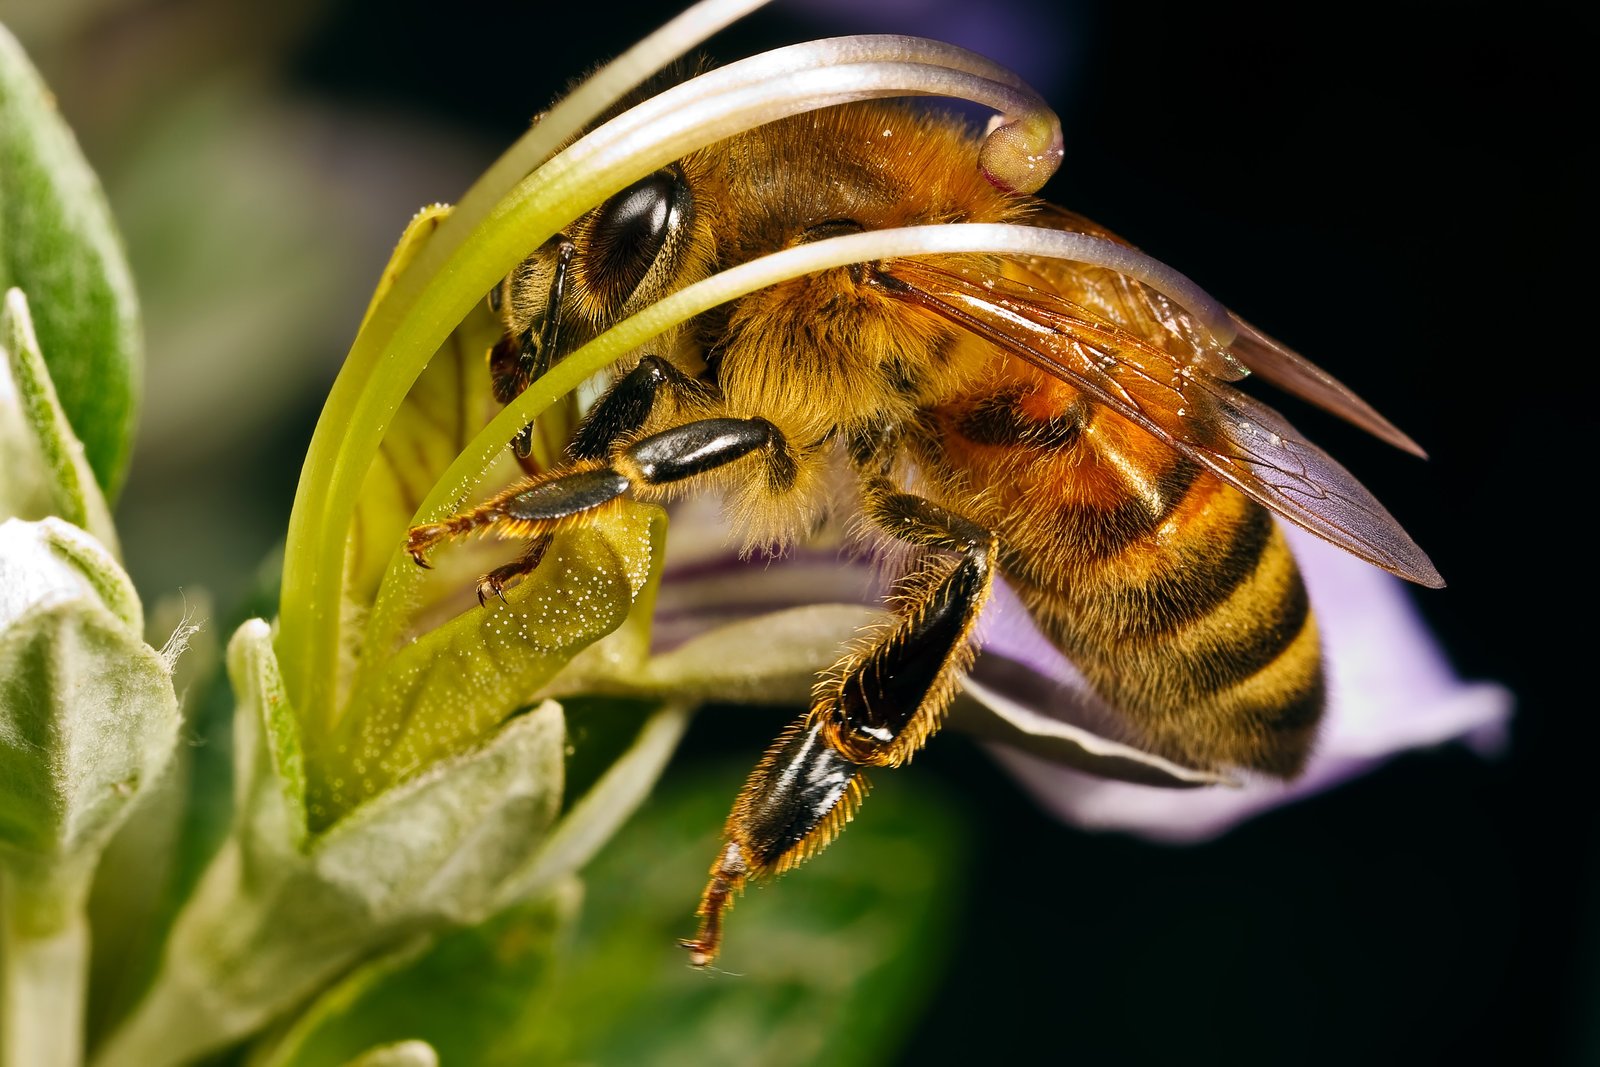 пчелиная семья